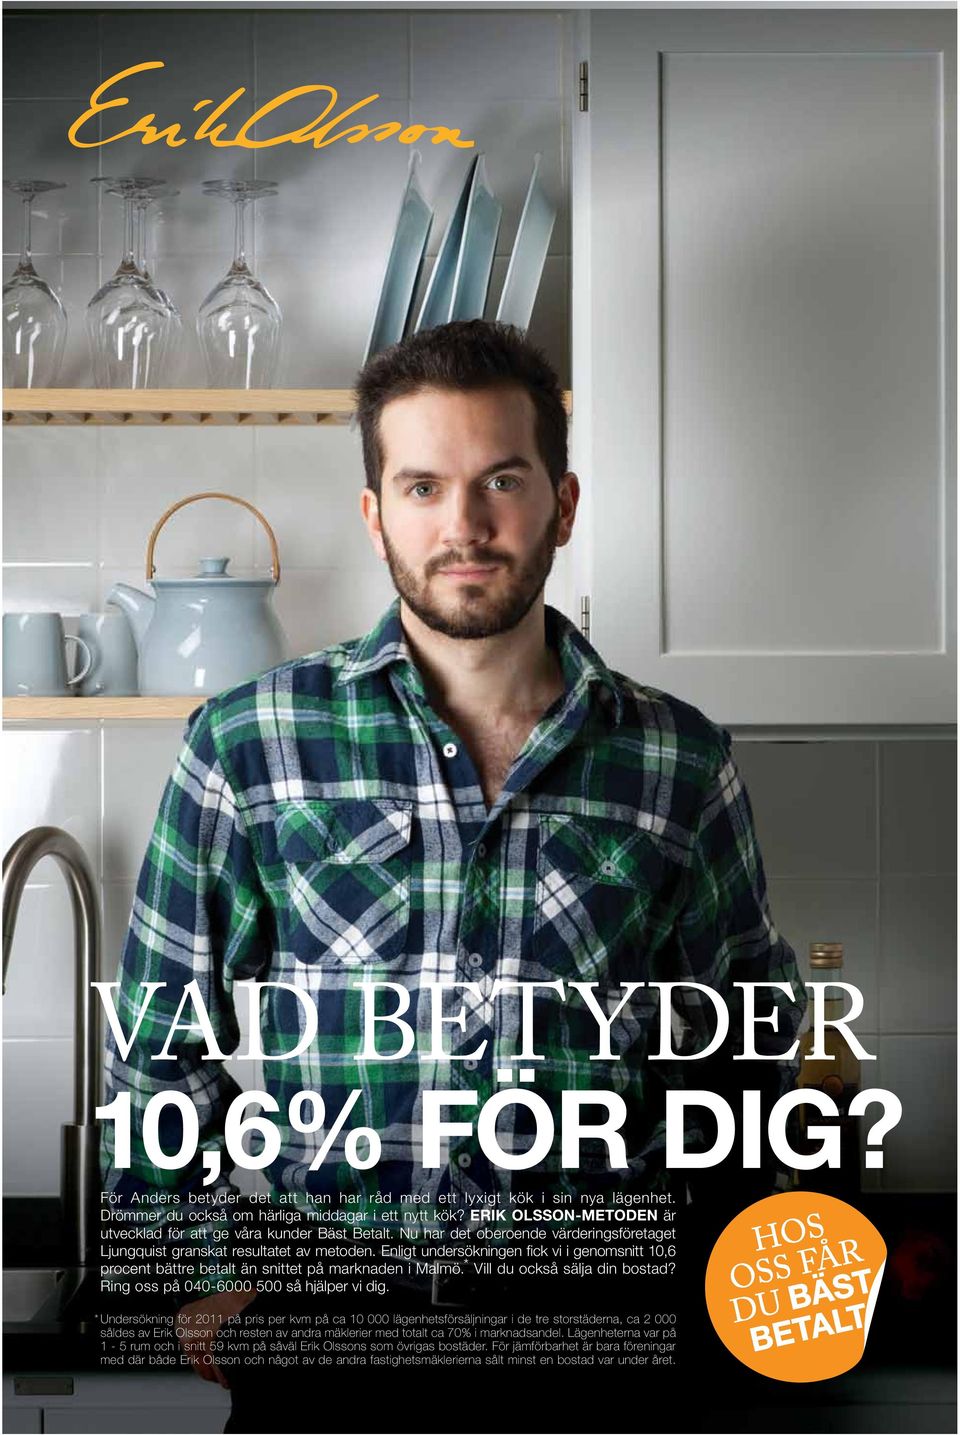 Enligt undersökningen fick vi i genomsnitt 10,6 procent bättre betalt än snittet på marknaden i Malmö. * Vill du också sälja din bostad? Ring oss på 040-6000 500 så hjälper vi dig.